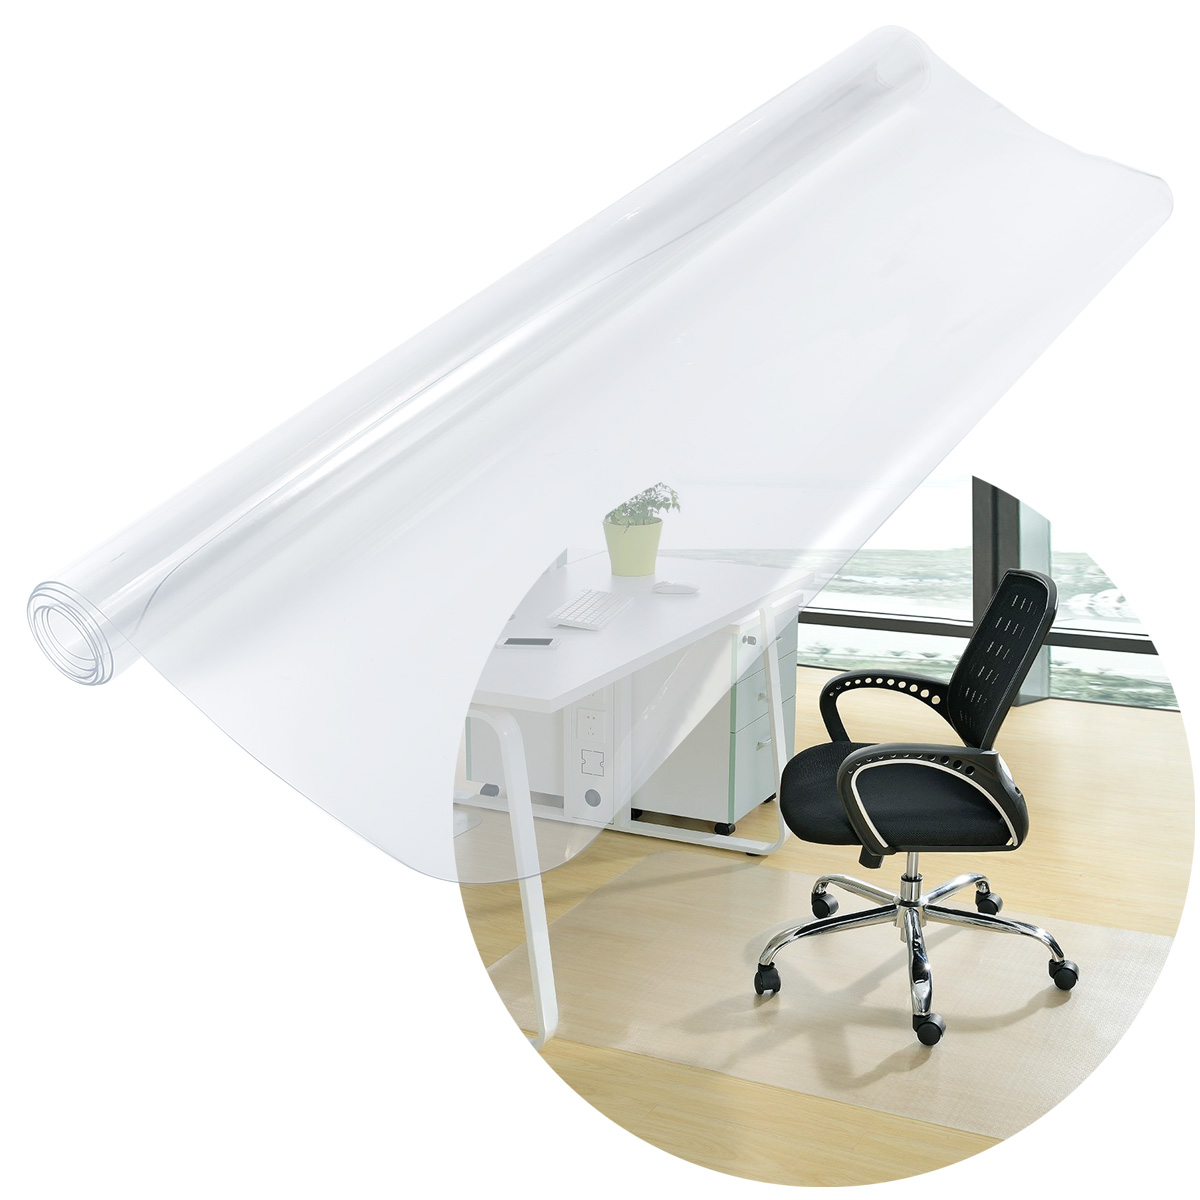 1 2 Meter Clear Non Slip Office Chair Desk Mat Floor Carpet